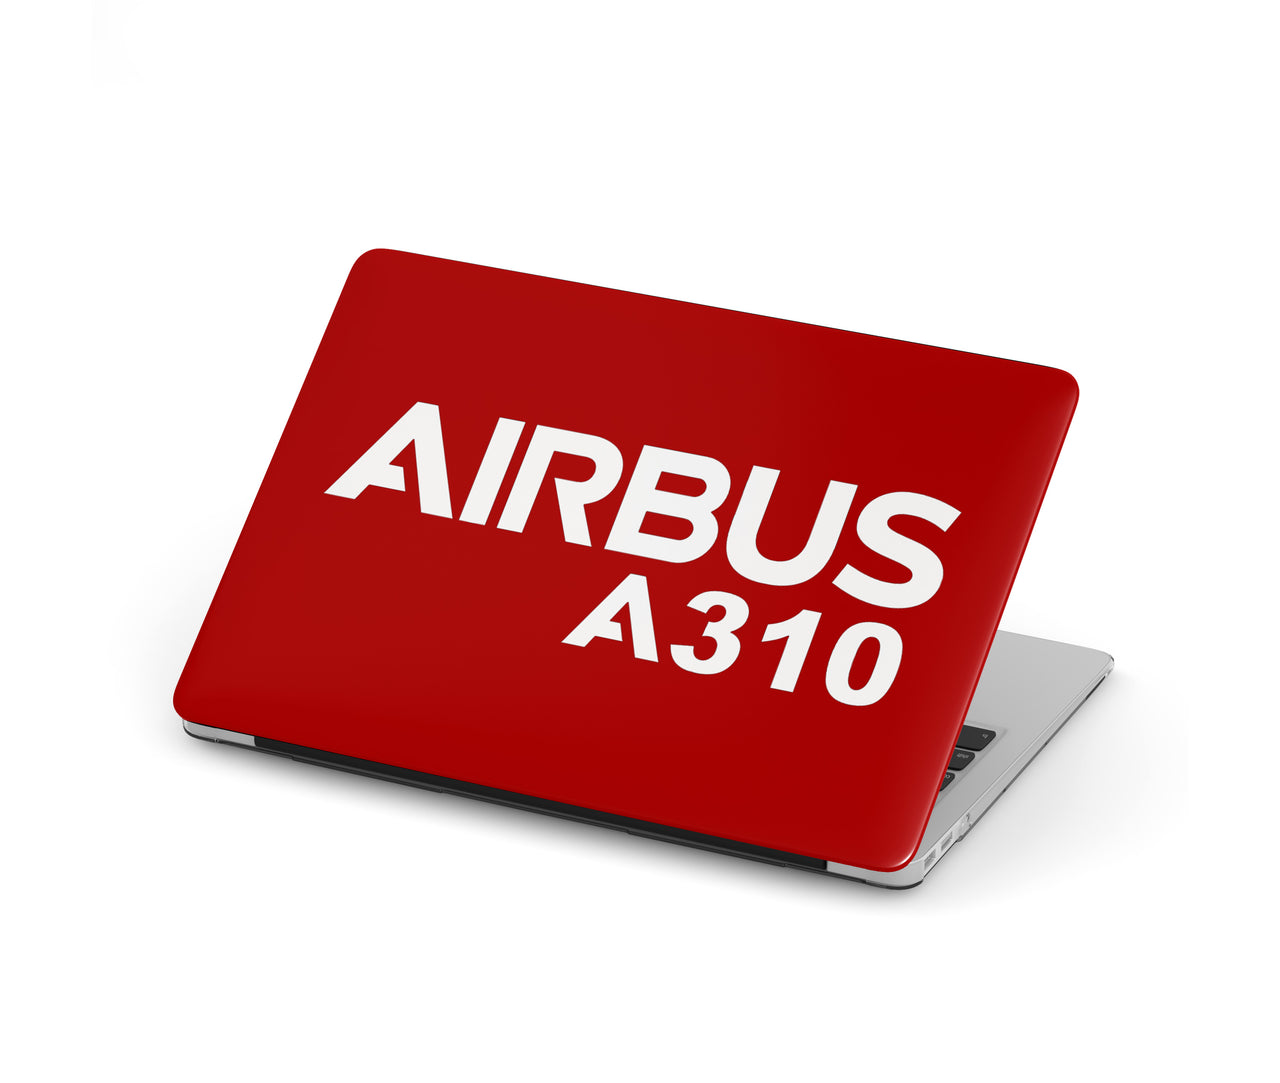 Airbus A310 & Text Designed Macbook Cases